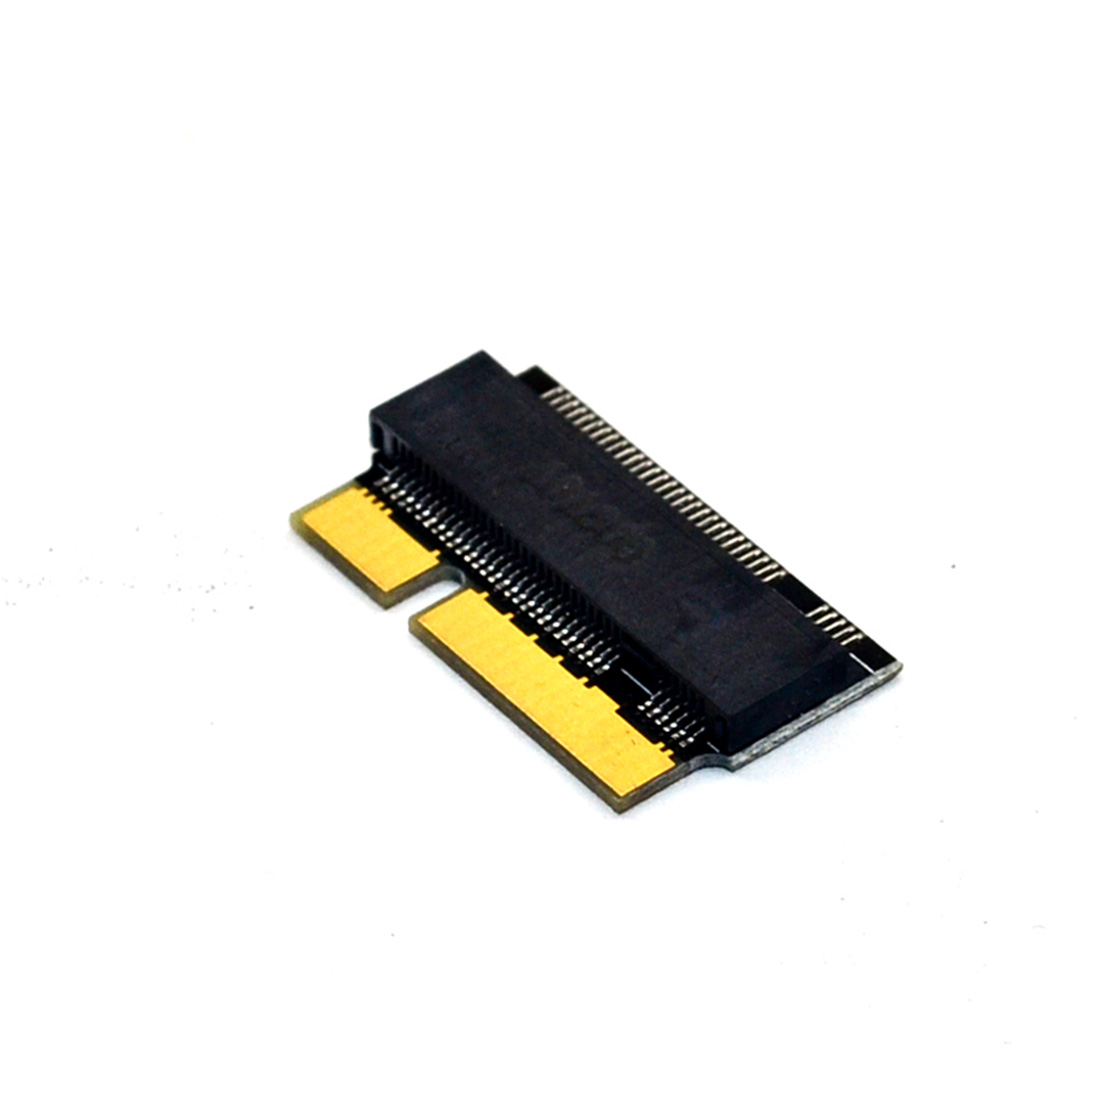 Sata M.2 Ssd Voor Macbook Hard Drive Disk Driver-Gratis Adapter Riser Card Met M.2 Sata KEY-B/M Interface